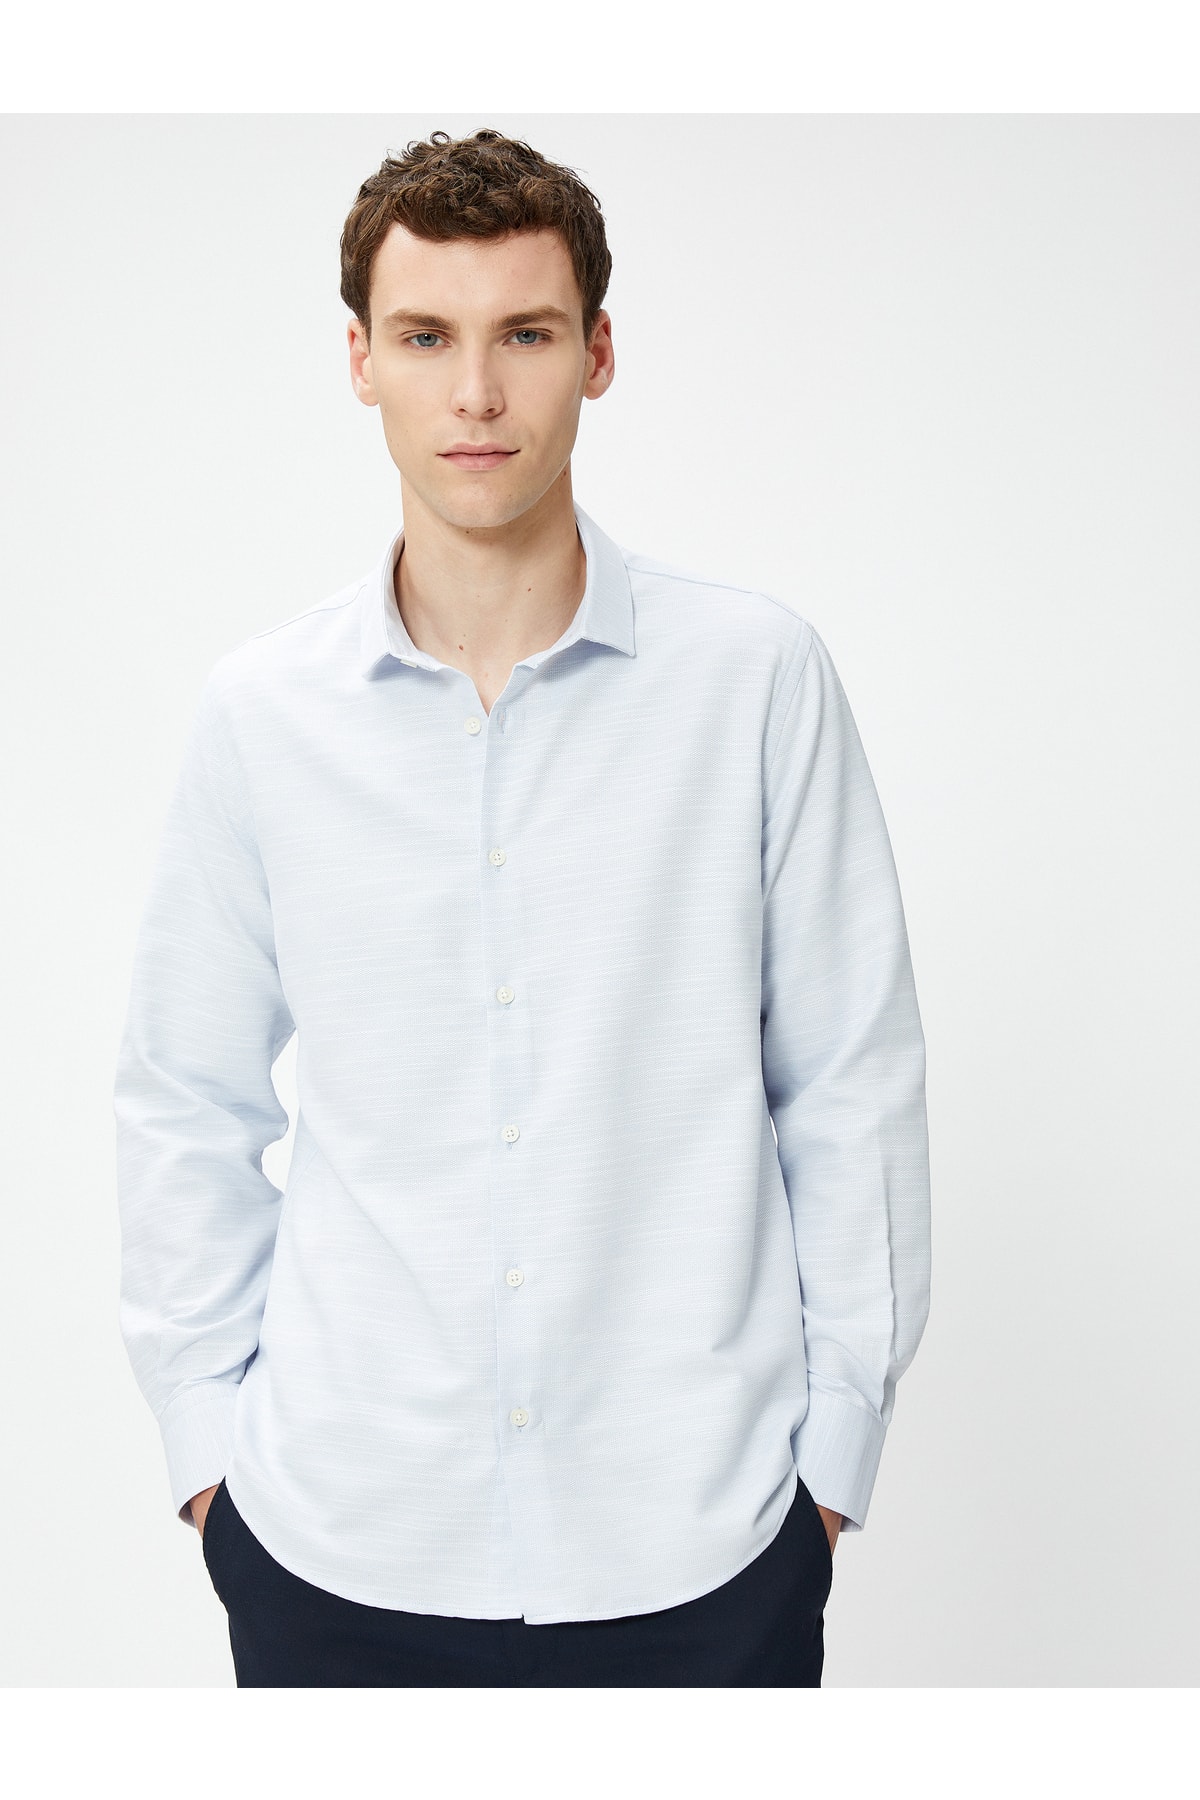 Koton Shirt with an Italian Collar Long Sleeve, Buttoned Non Iron